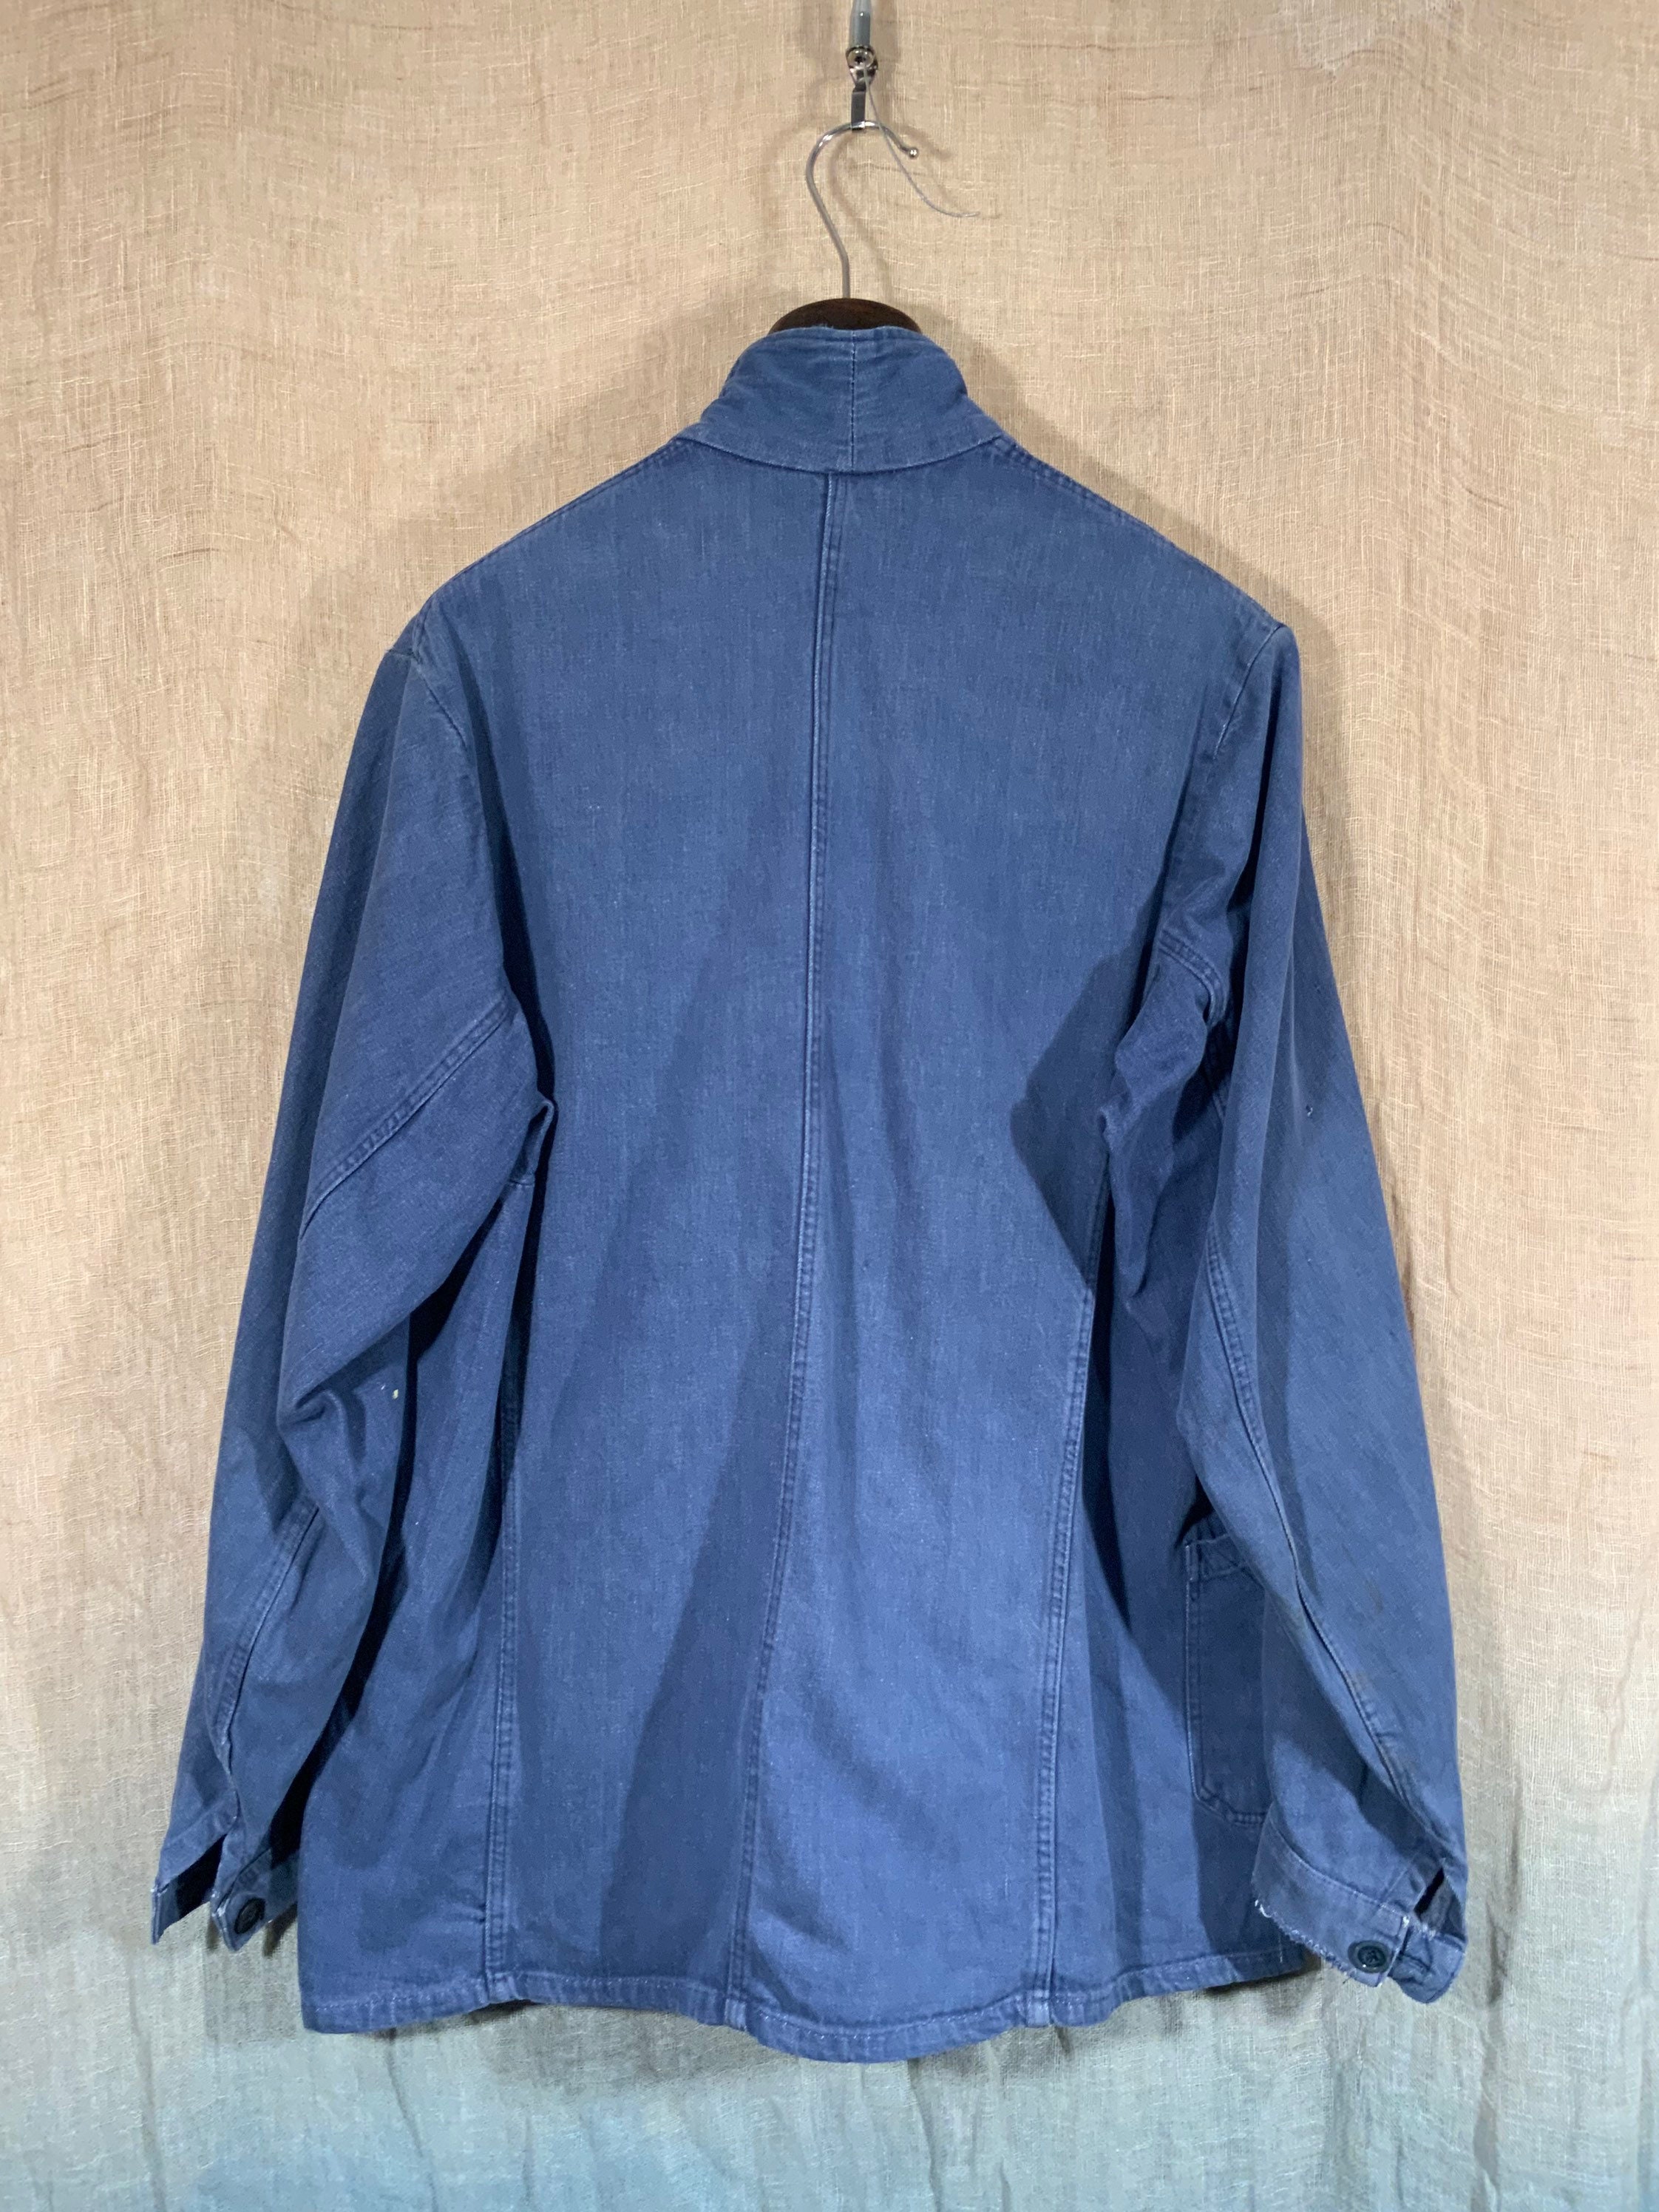 French 1960s Light Blue Indigo Denim Chore Jacket Great Signs - Etsy UK